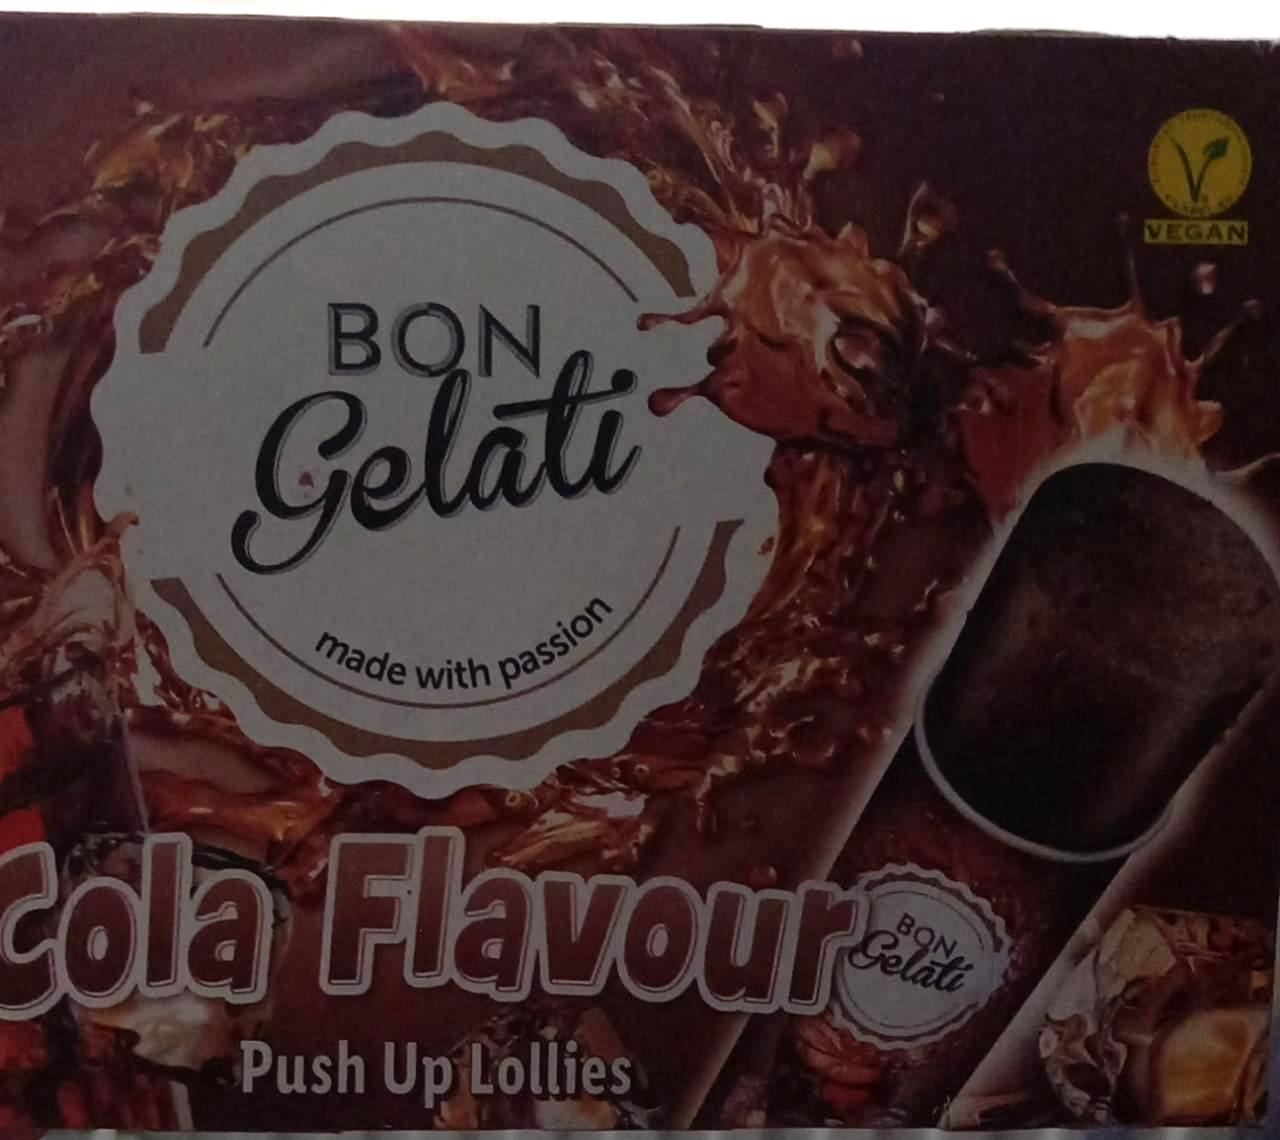 Képek - Cola flavour push up lollies Bon Gelati